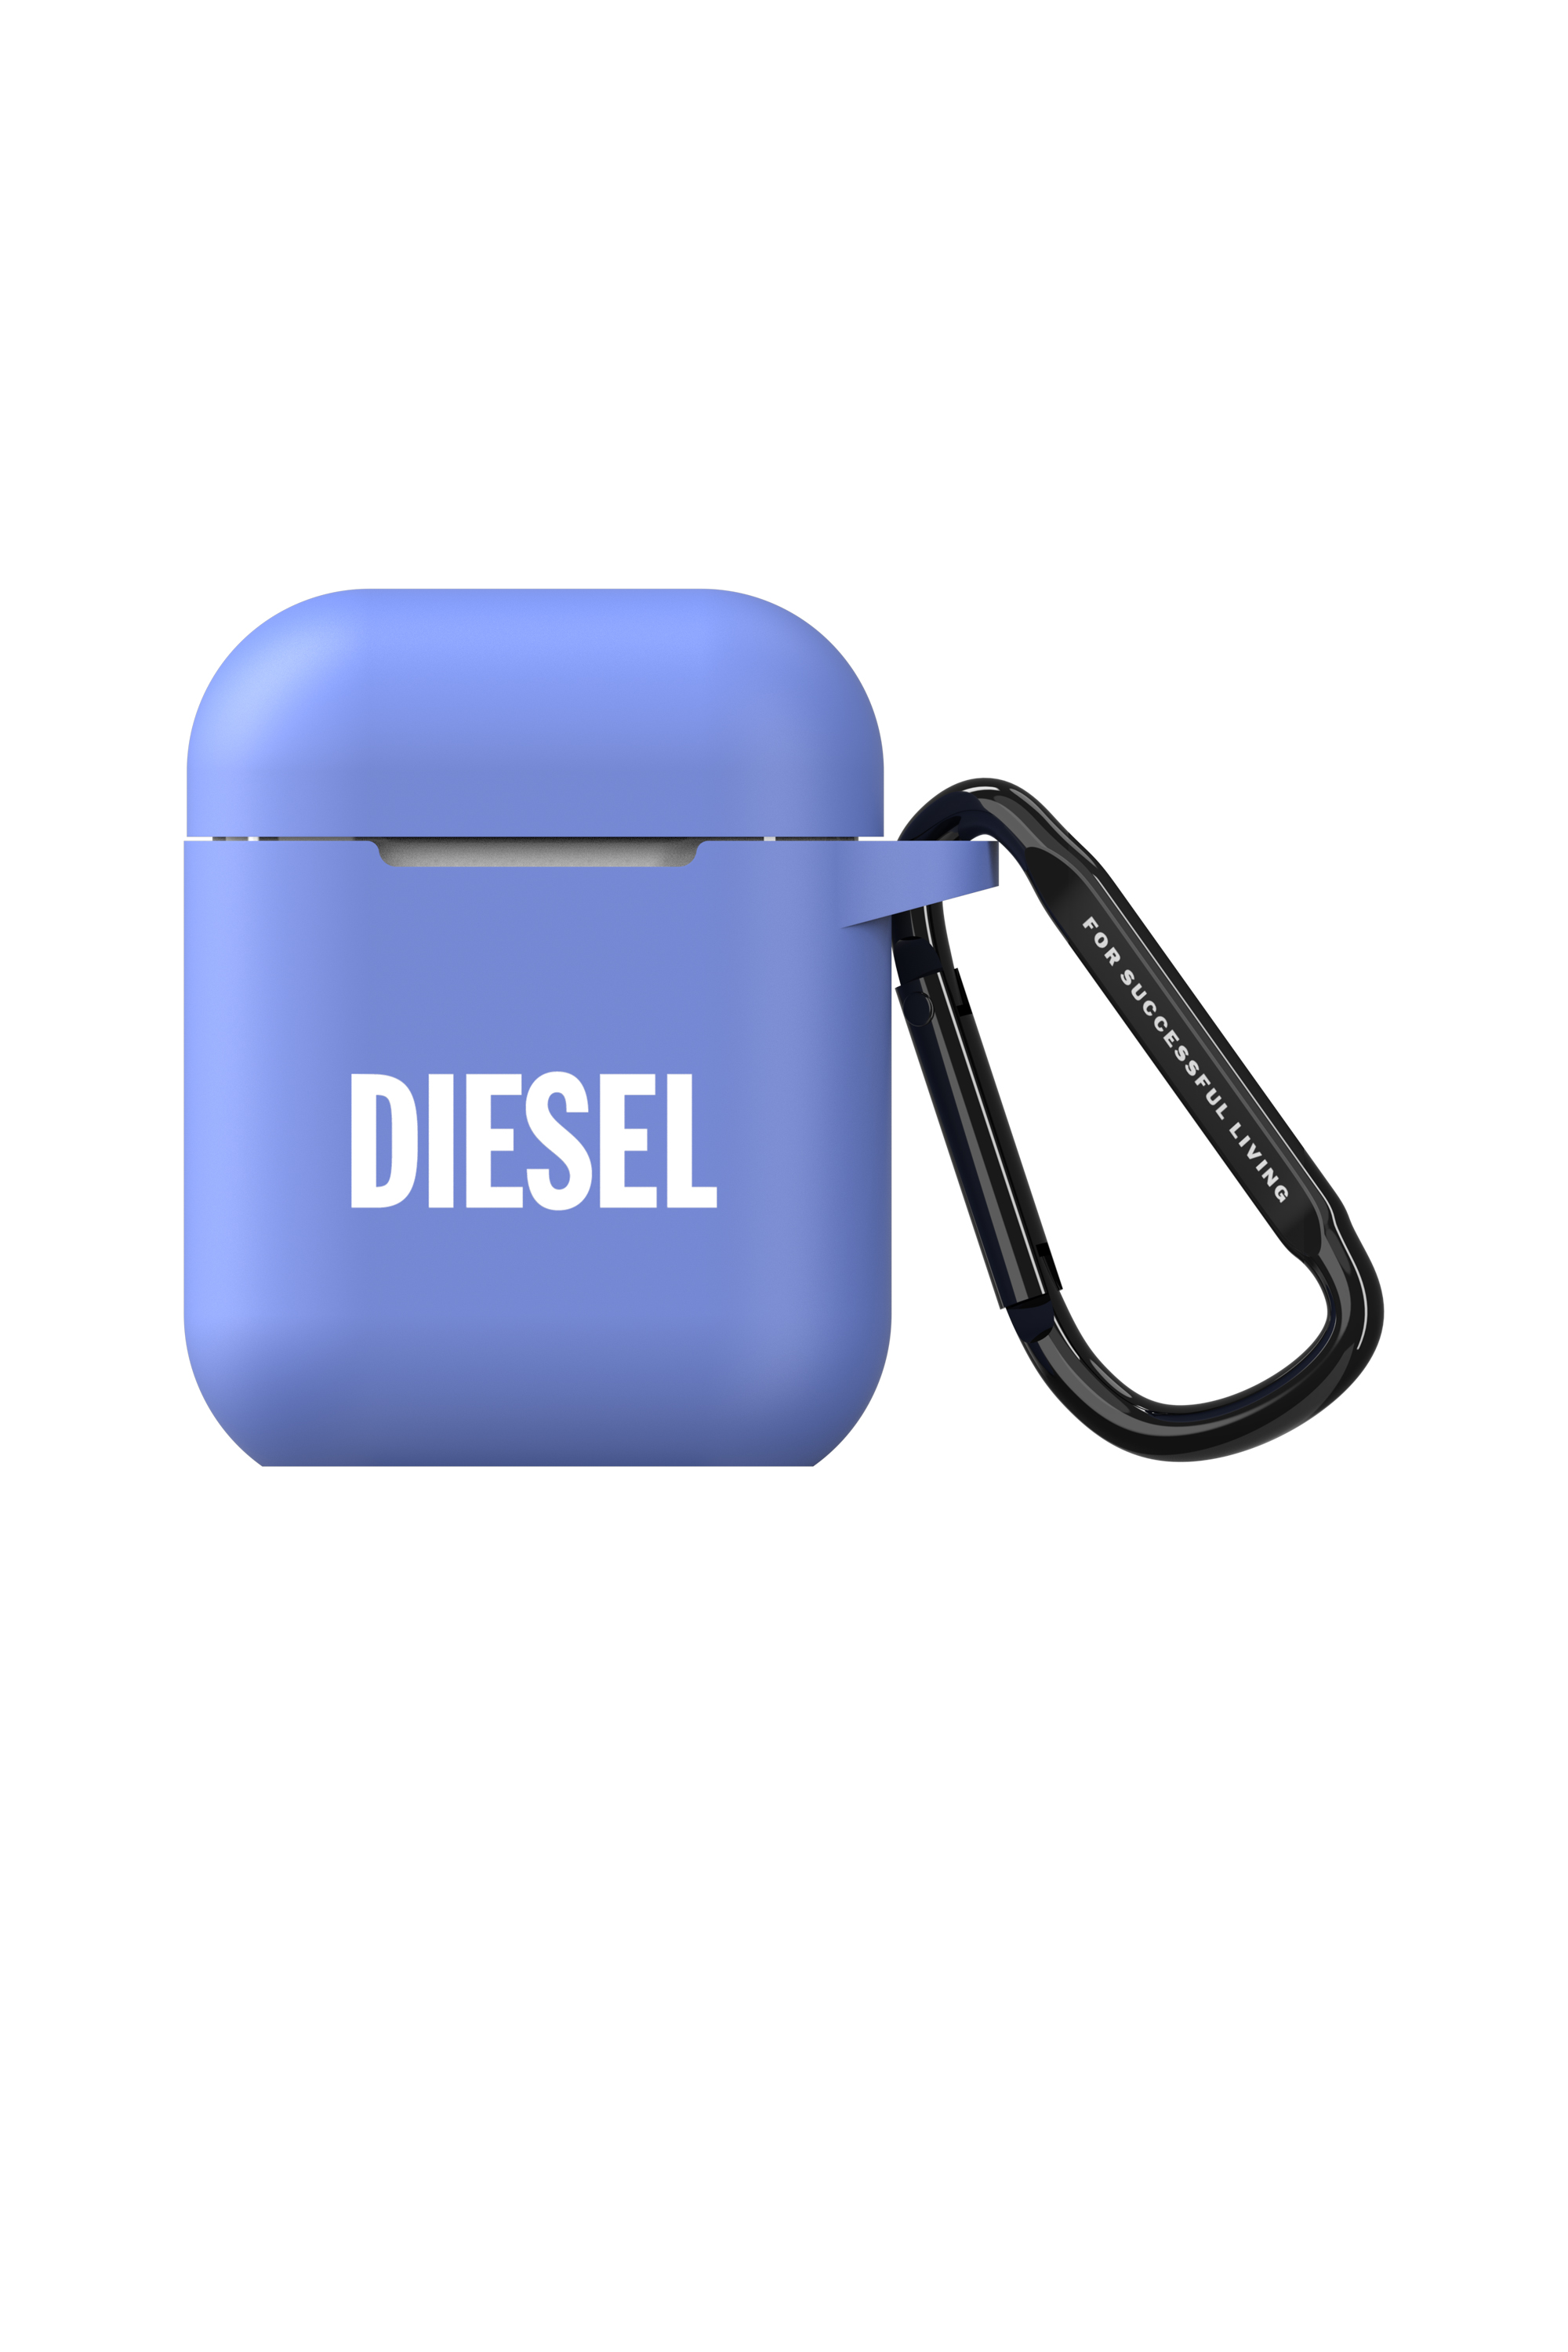 Diesel - 48319 AIRPOD CASE, Blau - Image 1